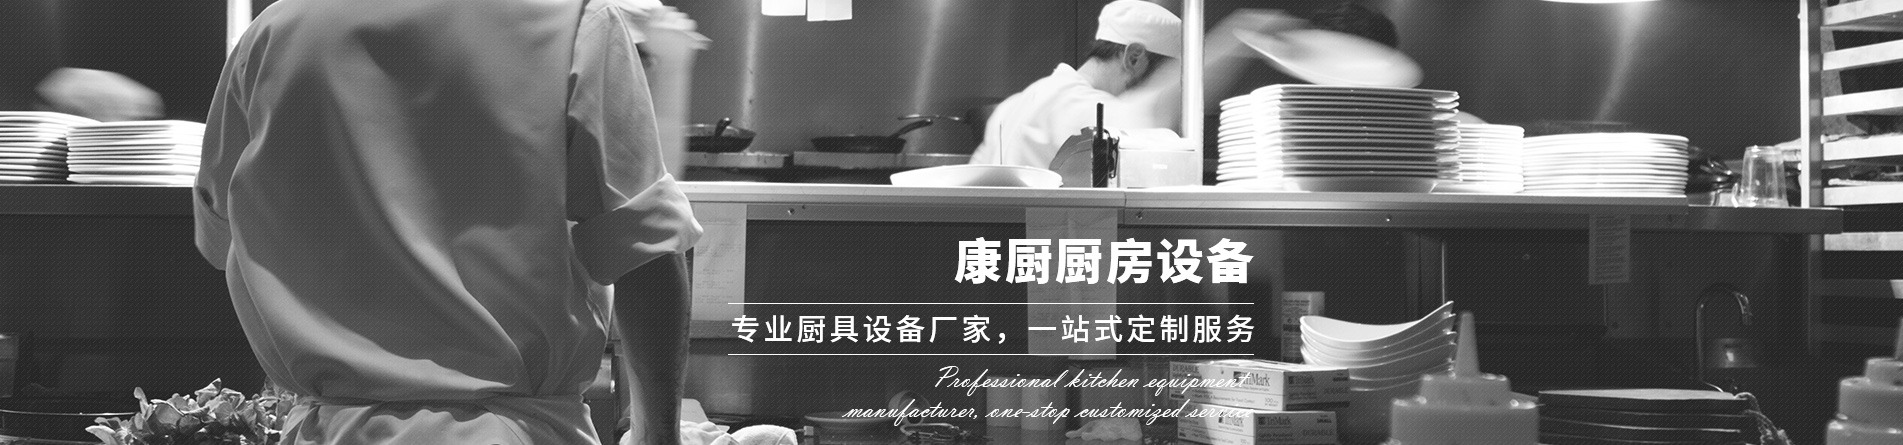 重庆酒店食堂厨房设备厂家